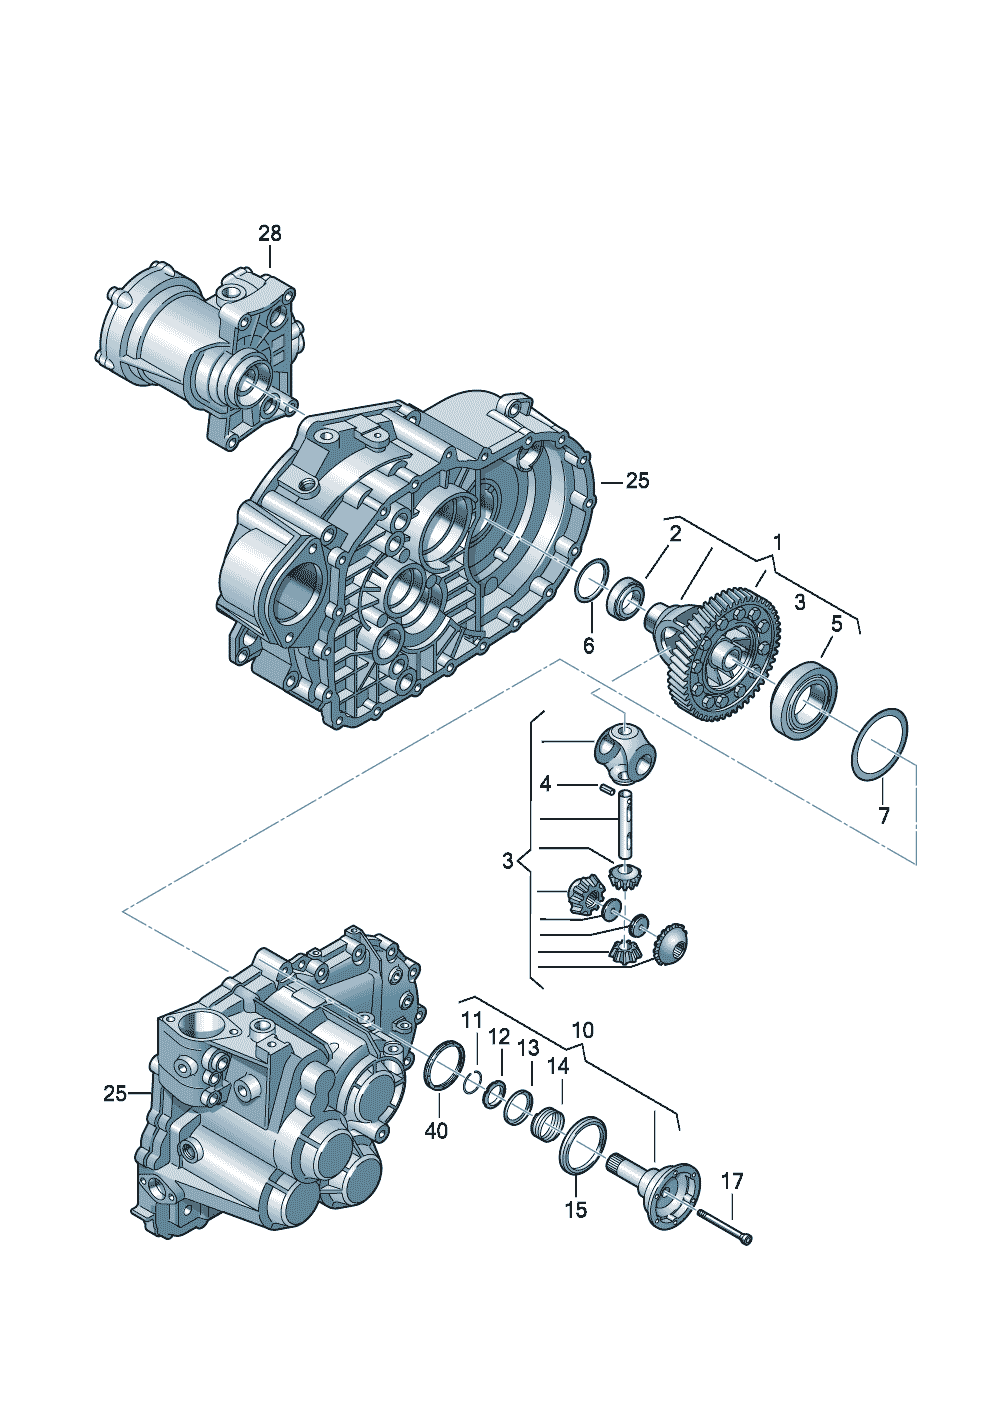 Boitier de differentielArbre a brideBoite mecanique 6 vitessespour transmission integrale 2,0l - Audi TT/TTS Coupe/Roadster - att